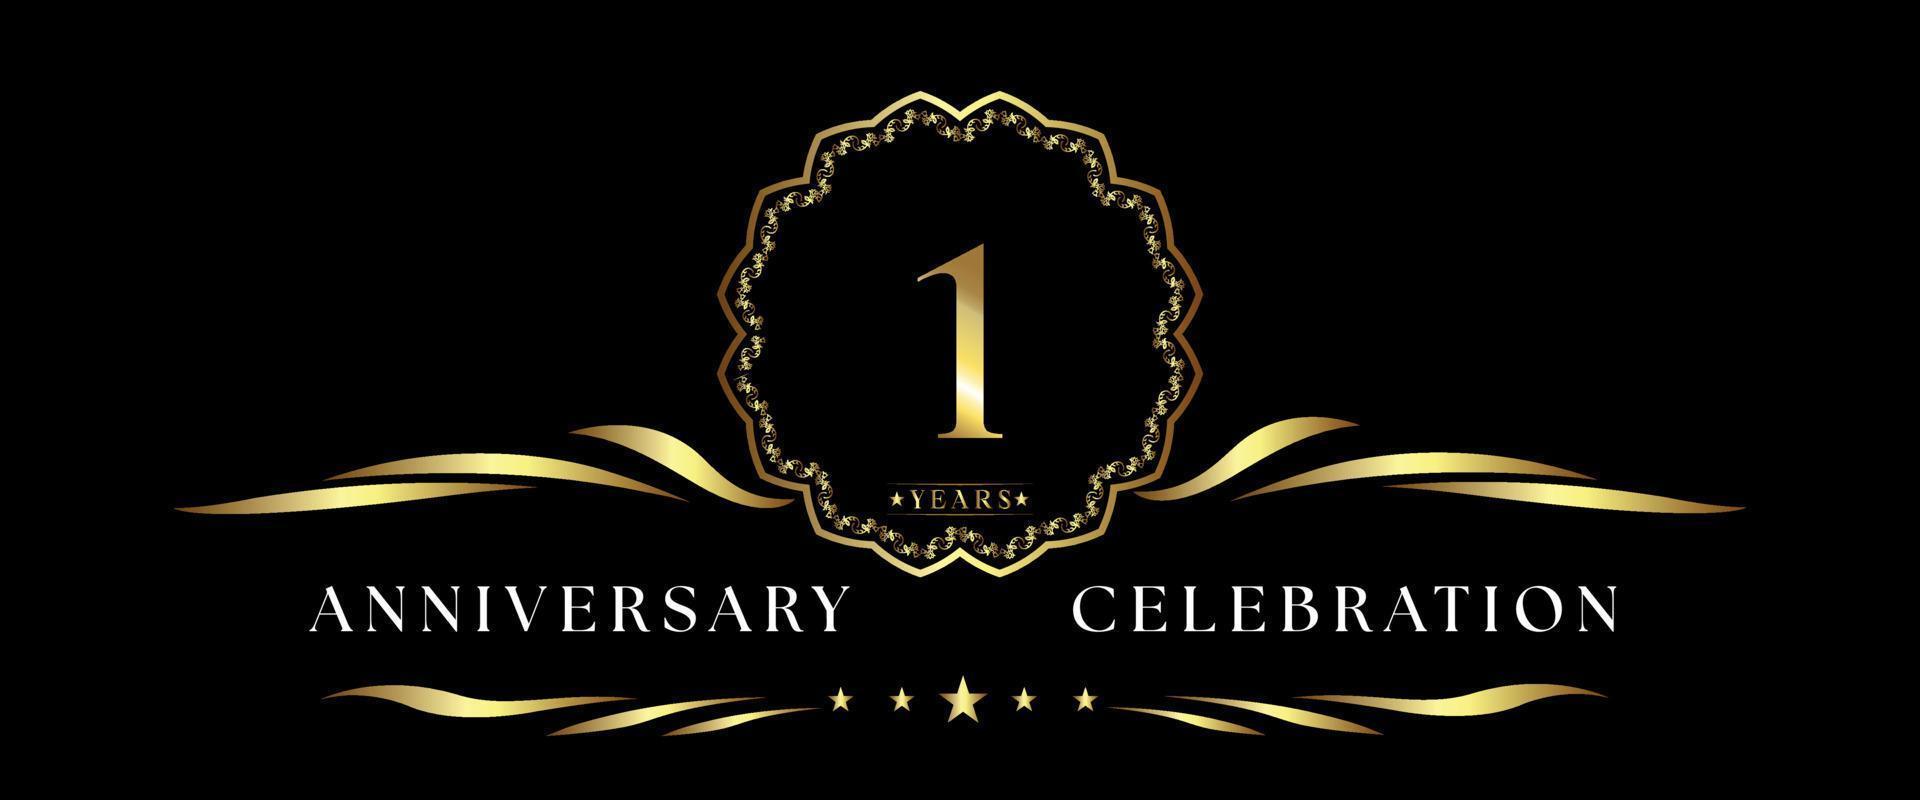 Celebración del aniversario de 1 año con marco decorativo dorado aislado en fondo negro. diseño vectorial para tarjetas de felicitación, fiesta de cumpleaños, boda, fiesta de eventos, ceremonia. Logotipo de aniversario de 1 año. vector